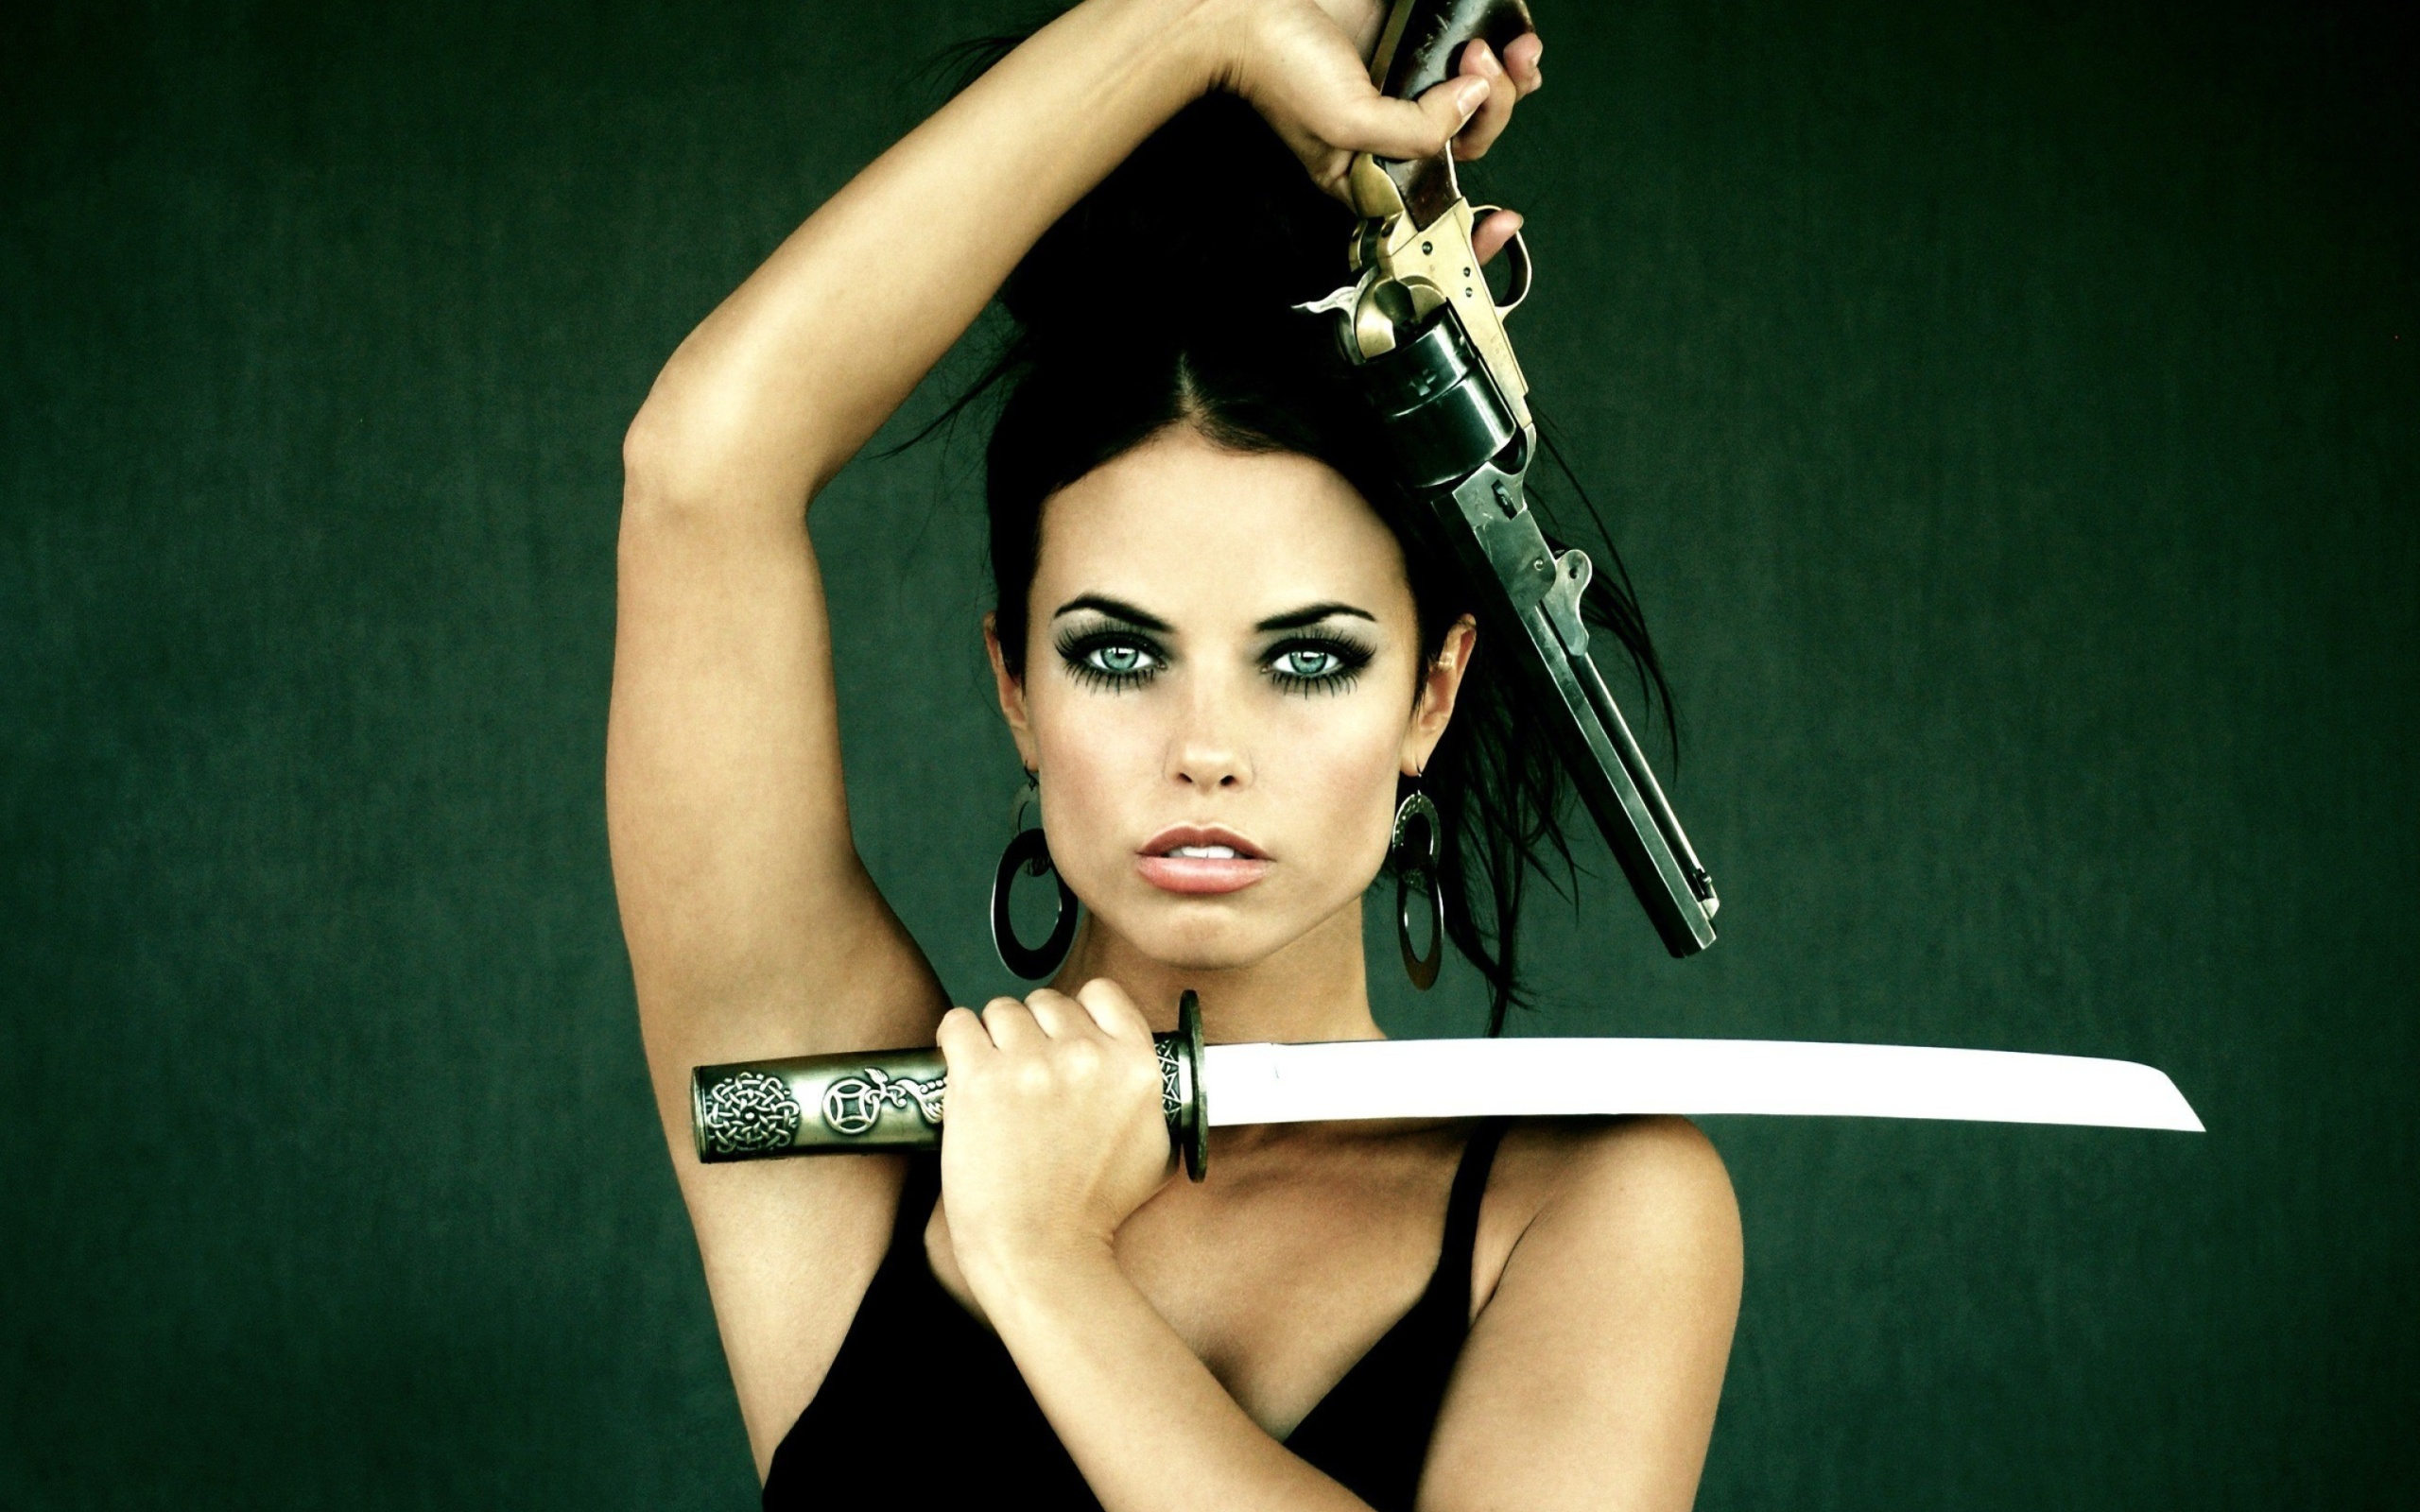 Warrior girl with swords wallpaper 2560x1600